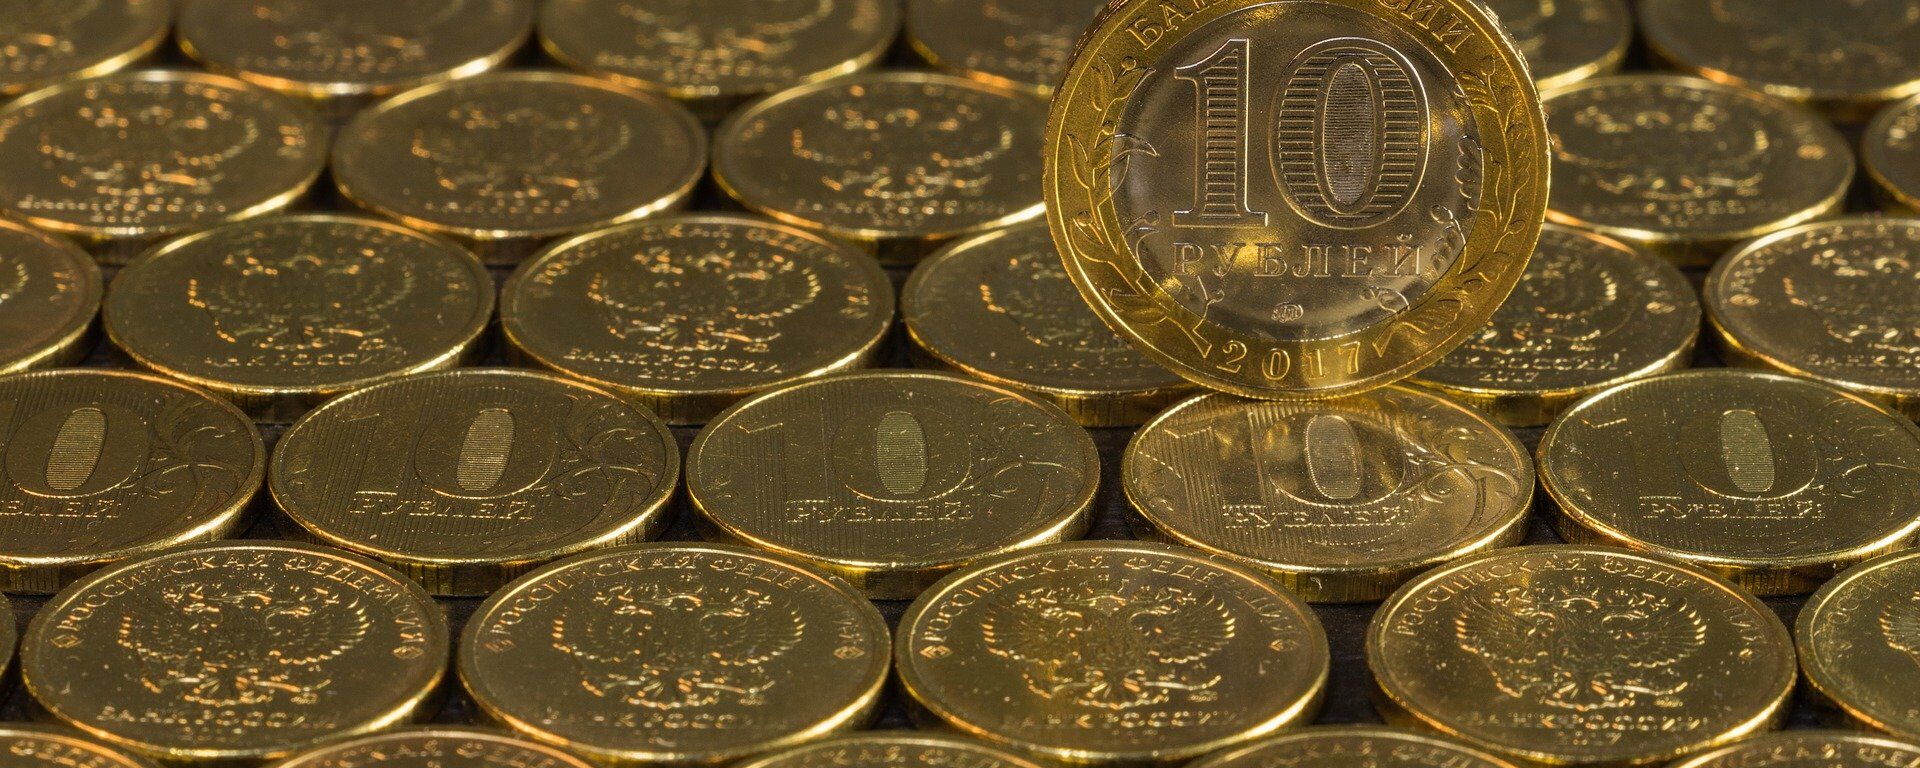 Монеты достоинством 10 рублей, архивное фото - Sputnik Таджикистан, 1920, 05.02.2021